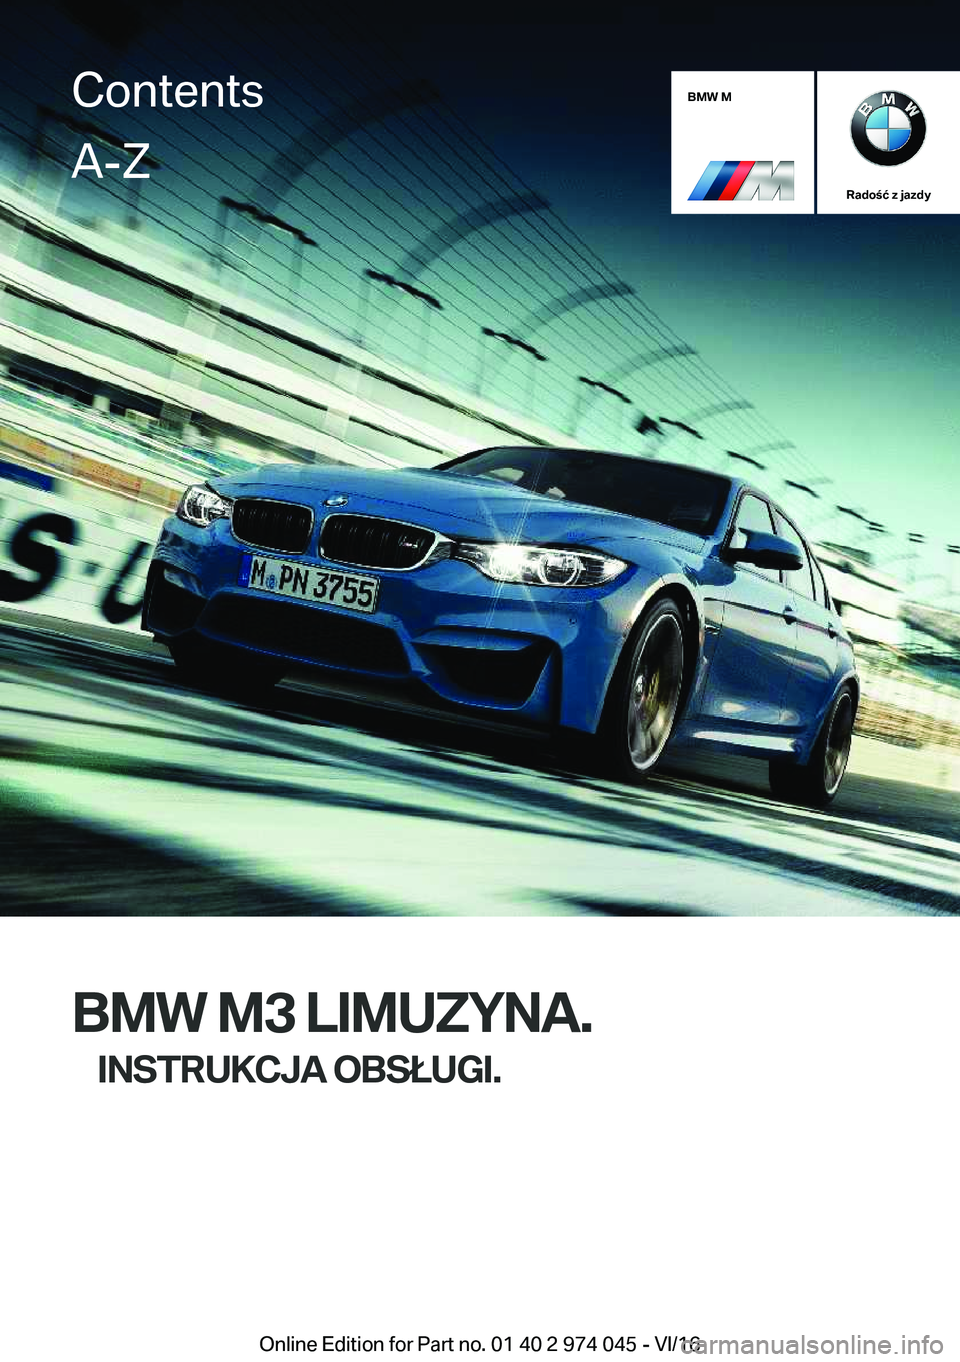 BMW M3 2017  Instrukcja obsługi (in Polish) �B�M�W��M
�R�a�d�o�